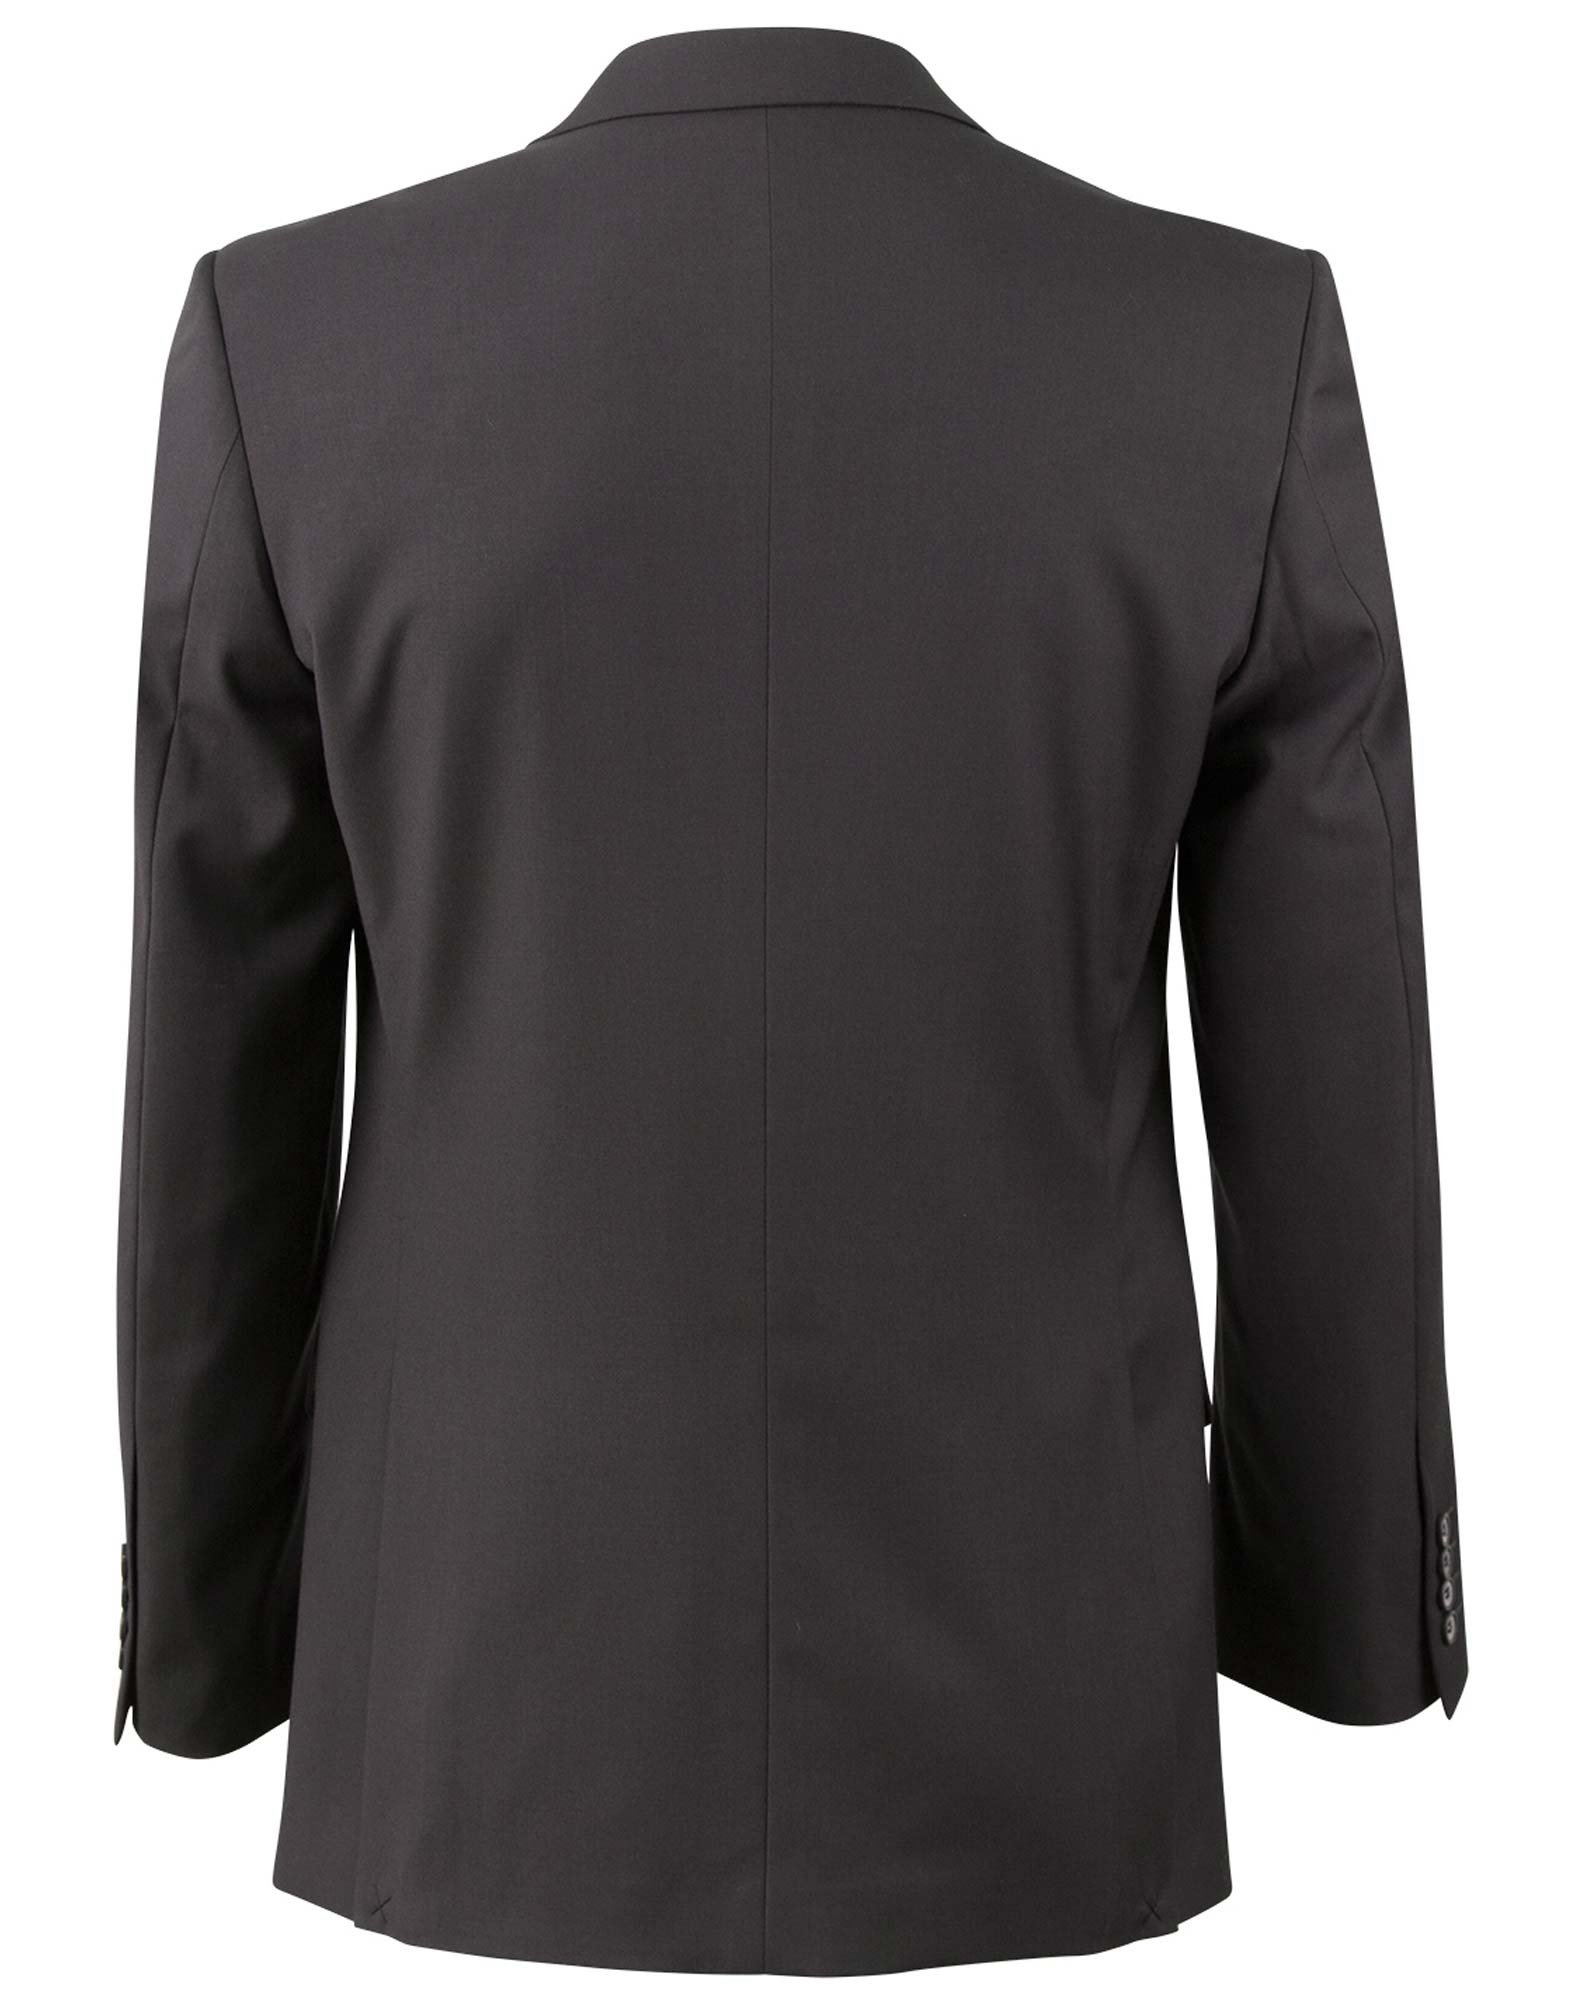 Men's Poly/Viscose Stretch Jacket